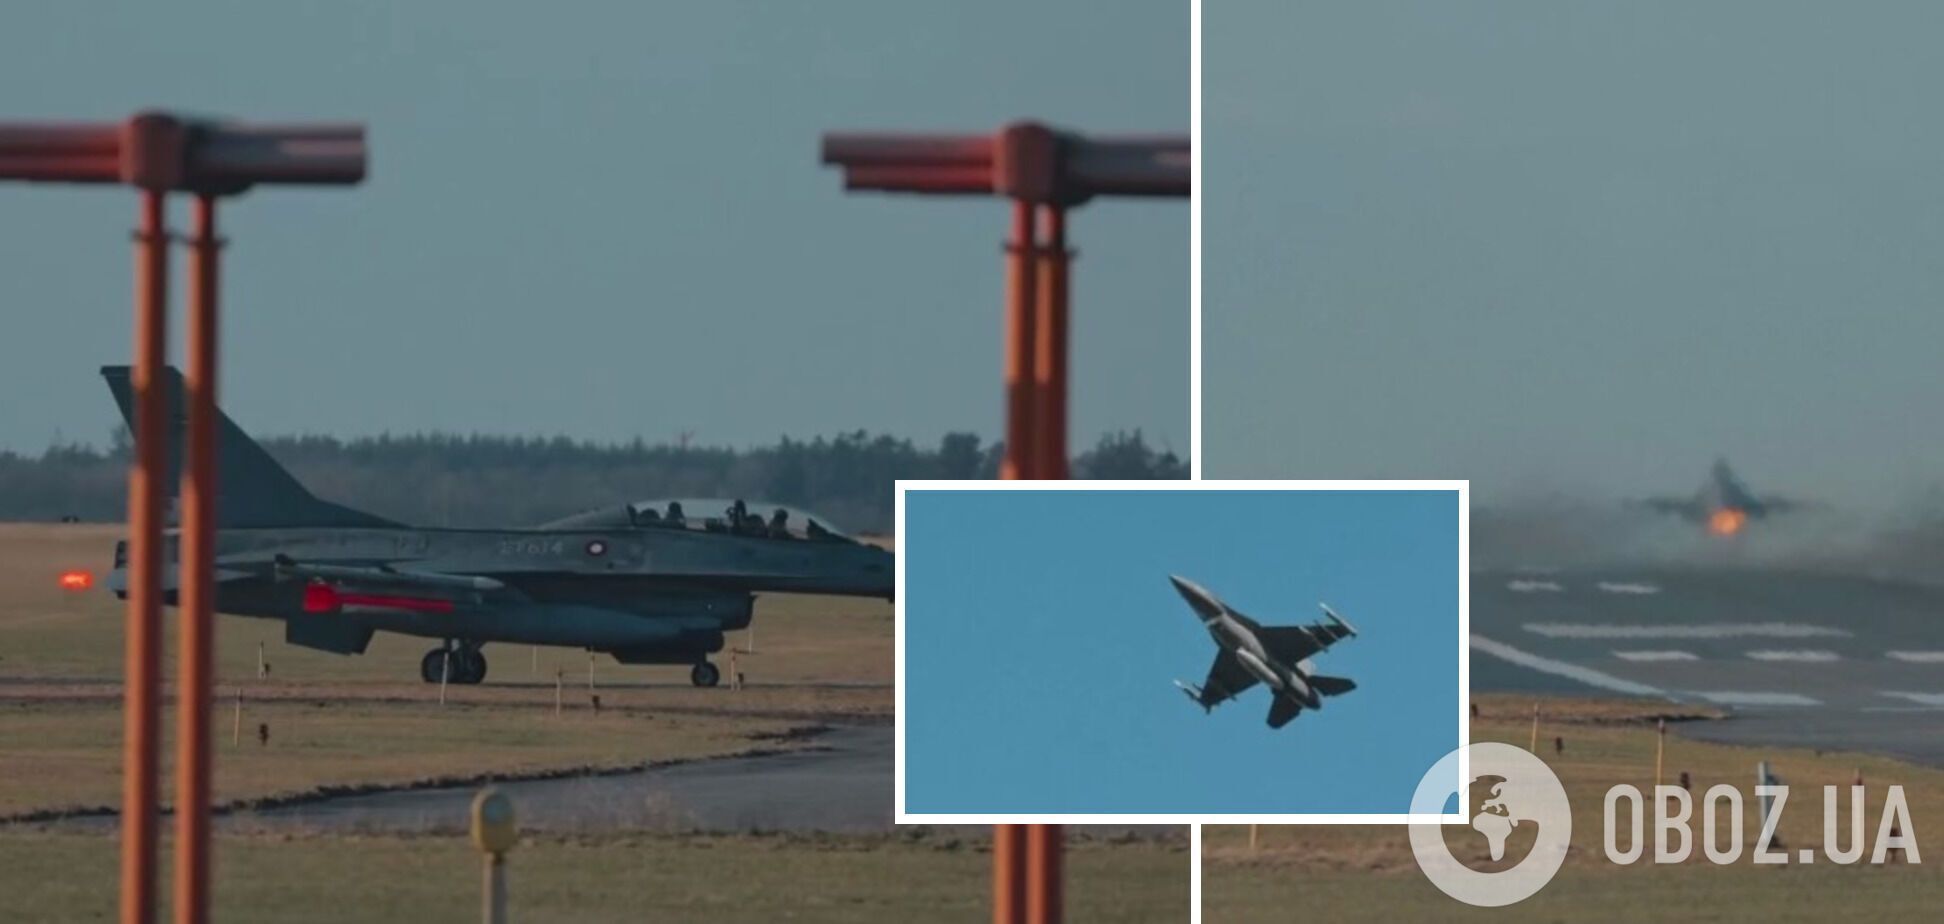 "Все украинцы ждут": Зеленский показал тренировку украинских пилотов на F-16. Видео